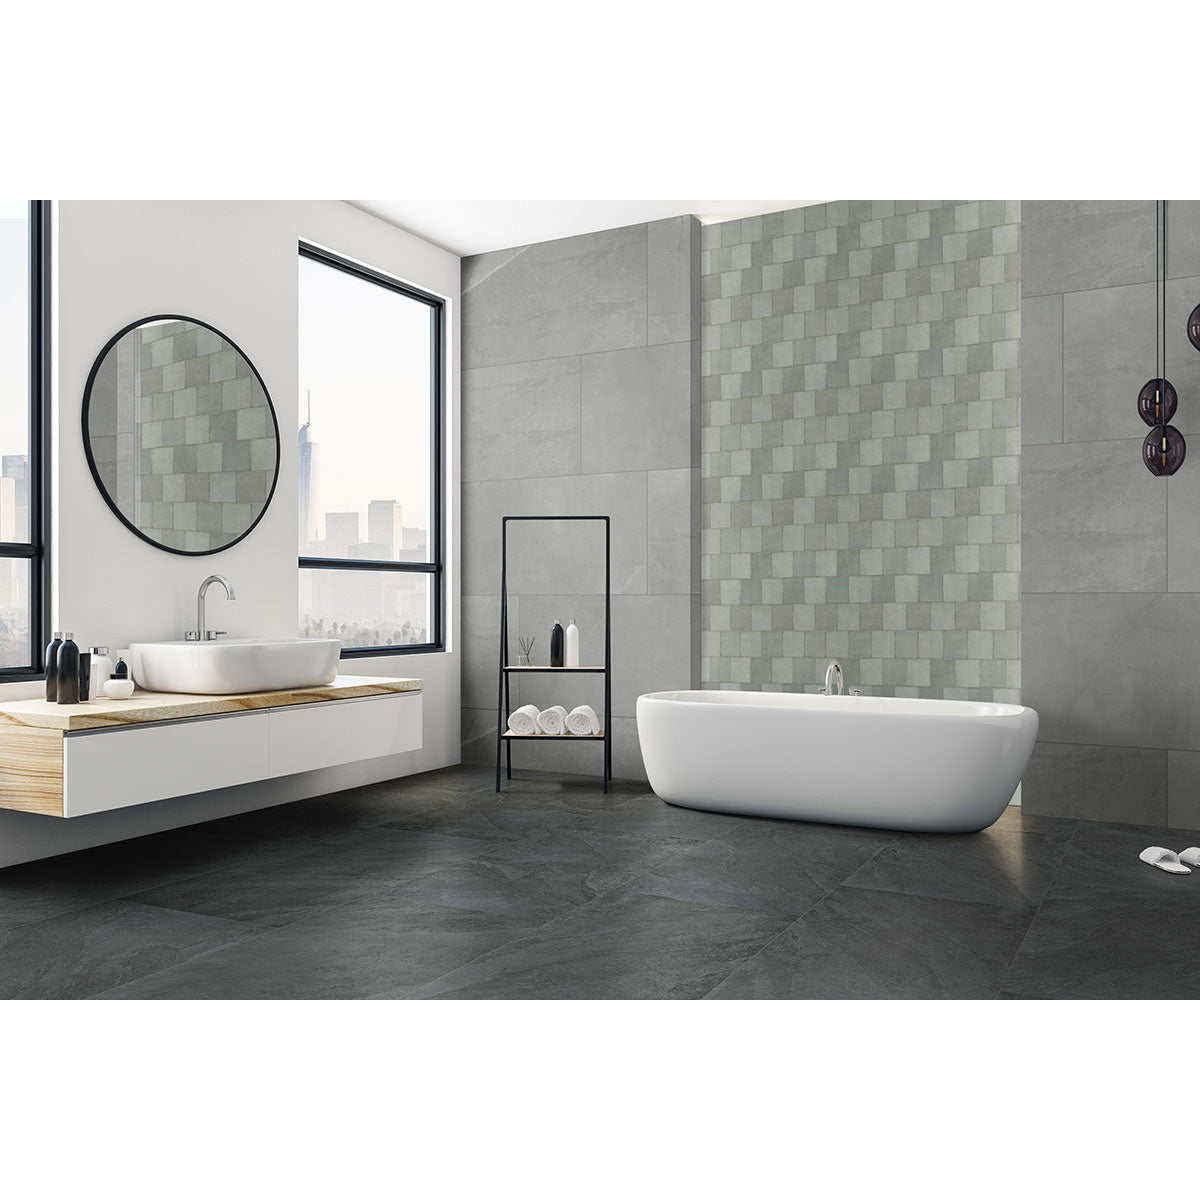 MSI - Renzo - 5 in. x 5 in. - Ceramic Wall Tile - Jade Room Scene